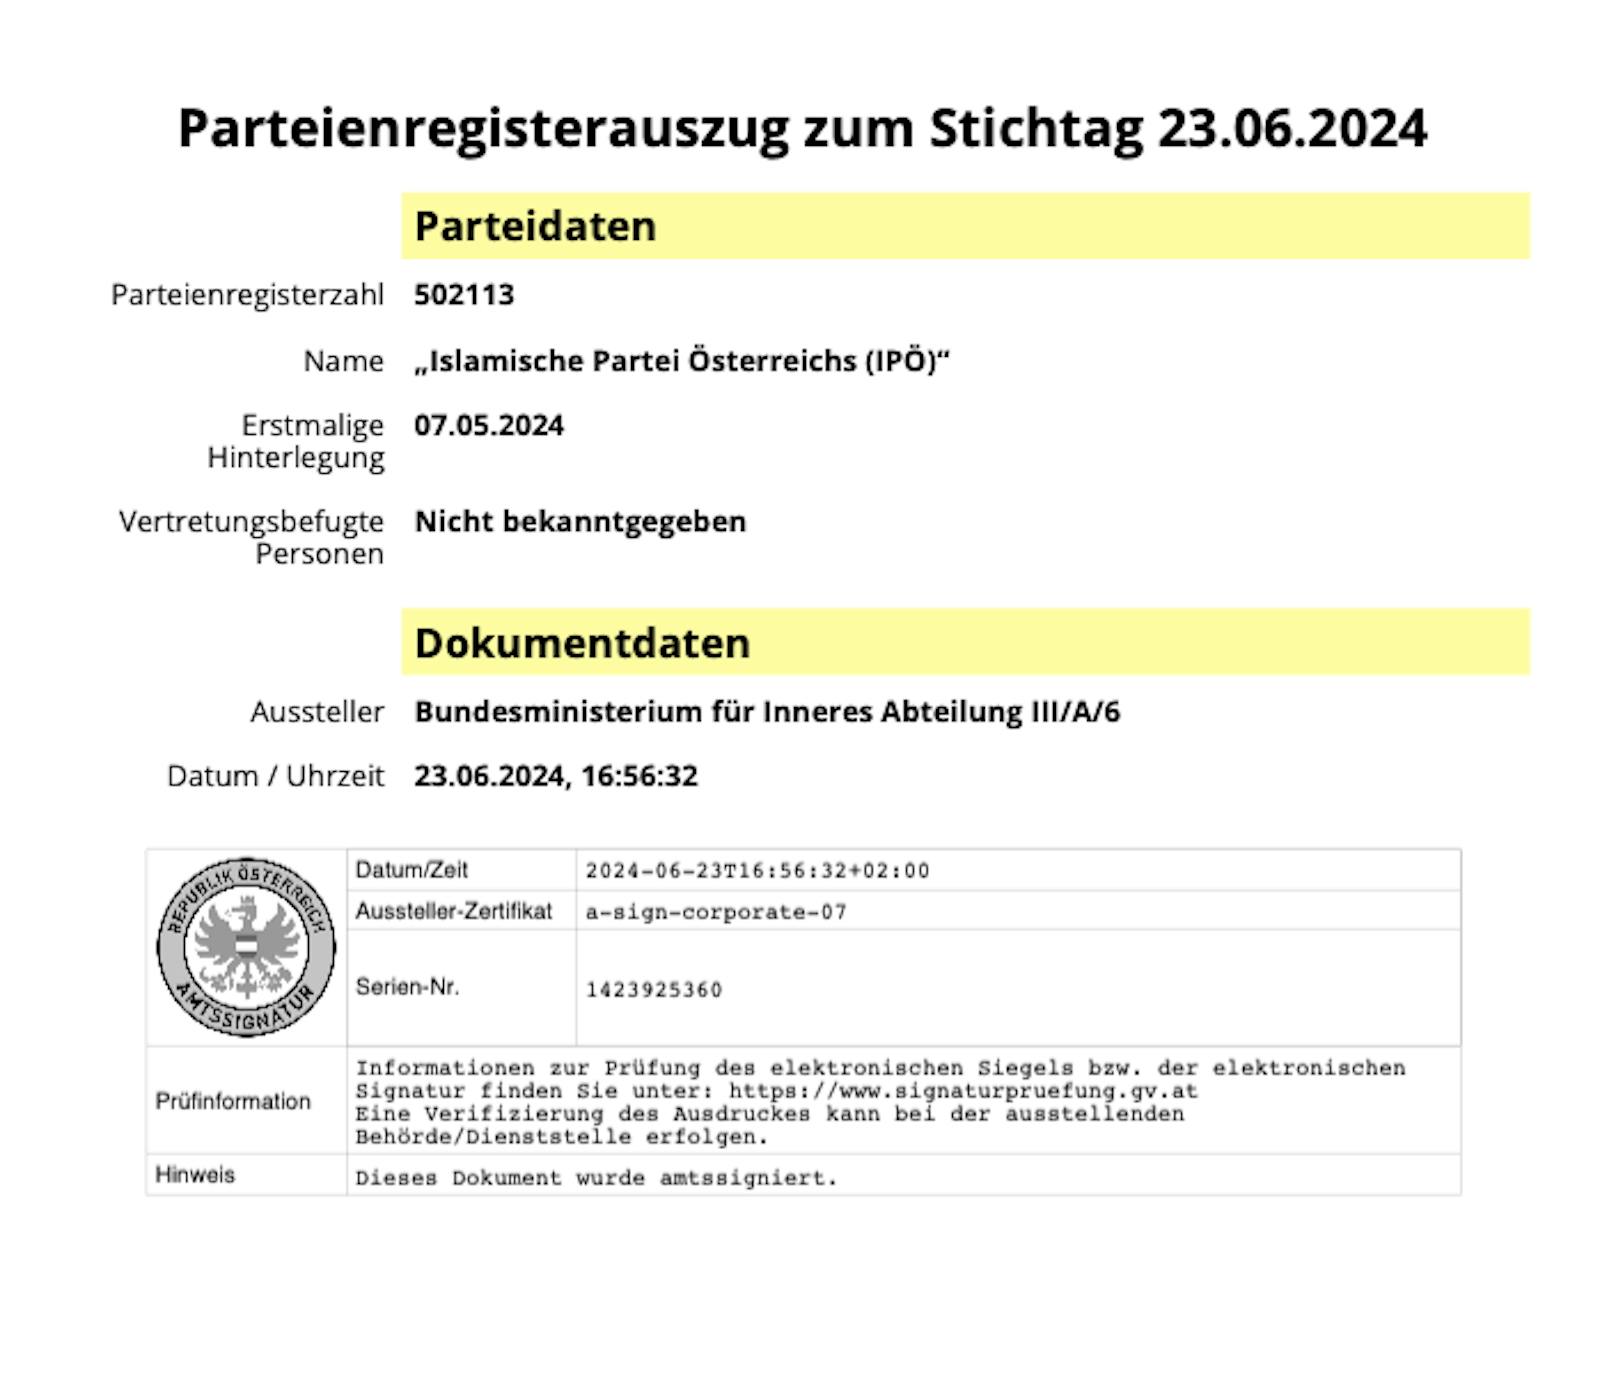 Neue "Islamische Partei Österreich" gegründet, im Bild der Parteienregisterauszug